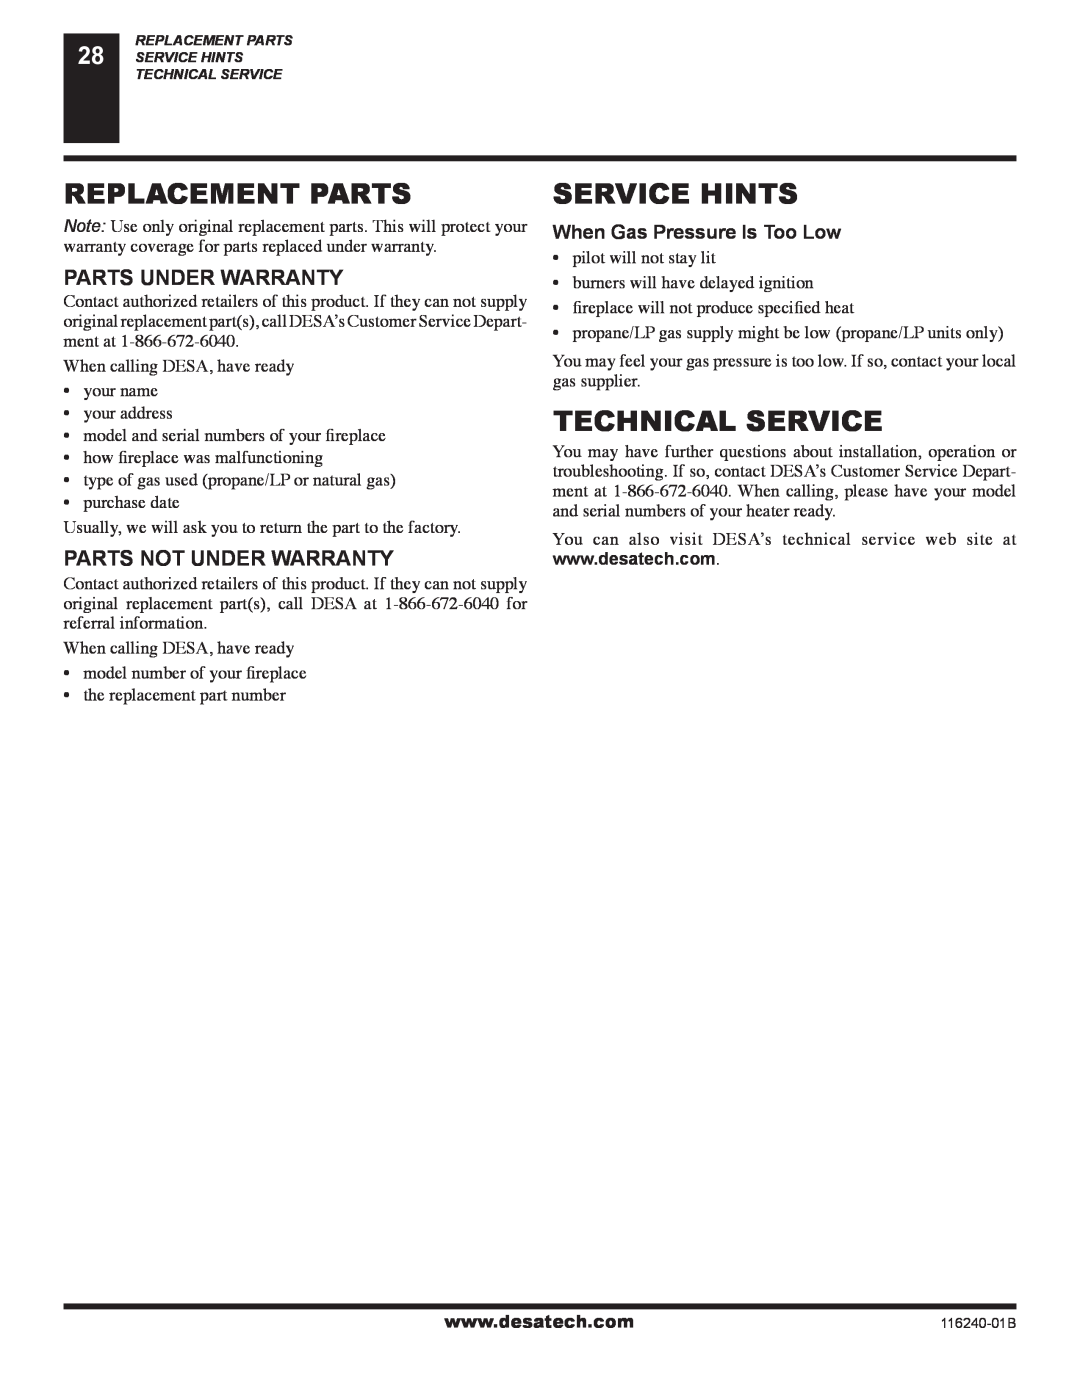 Desa (V)KC42NE SERIE Replacement Parts, Service Hints, Technical Service, Parts Under Warranty, Parts Not Under Warranty 